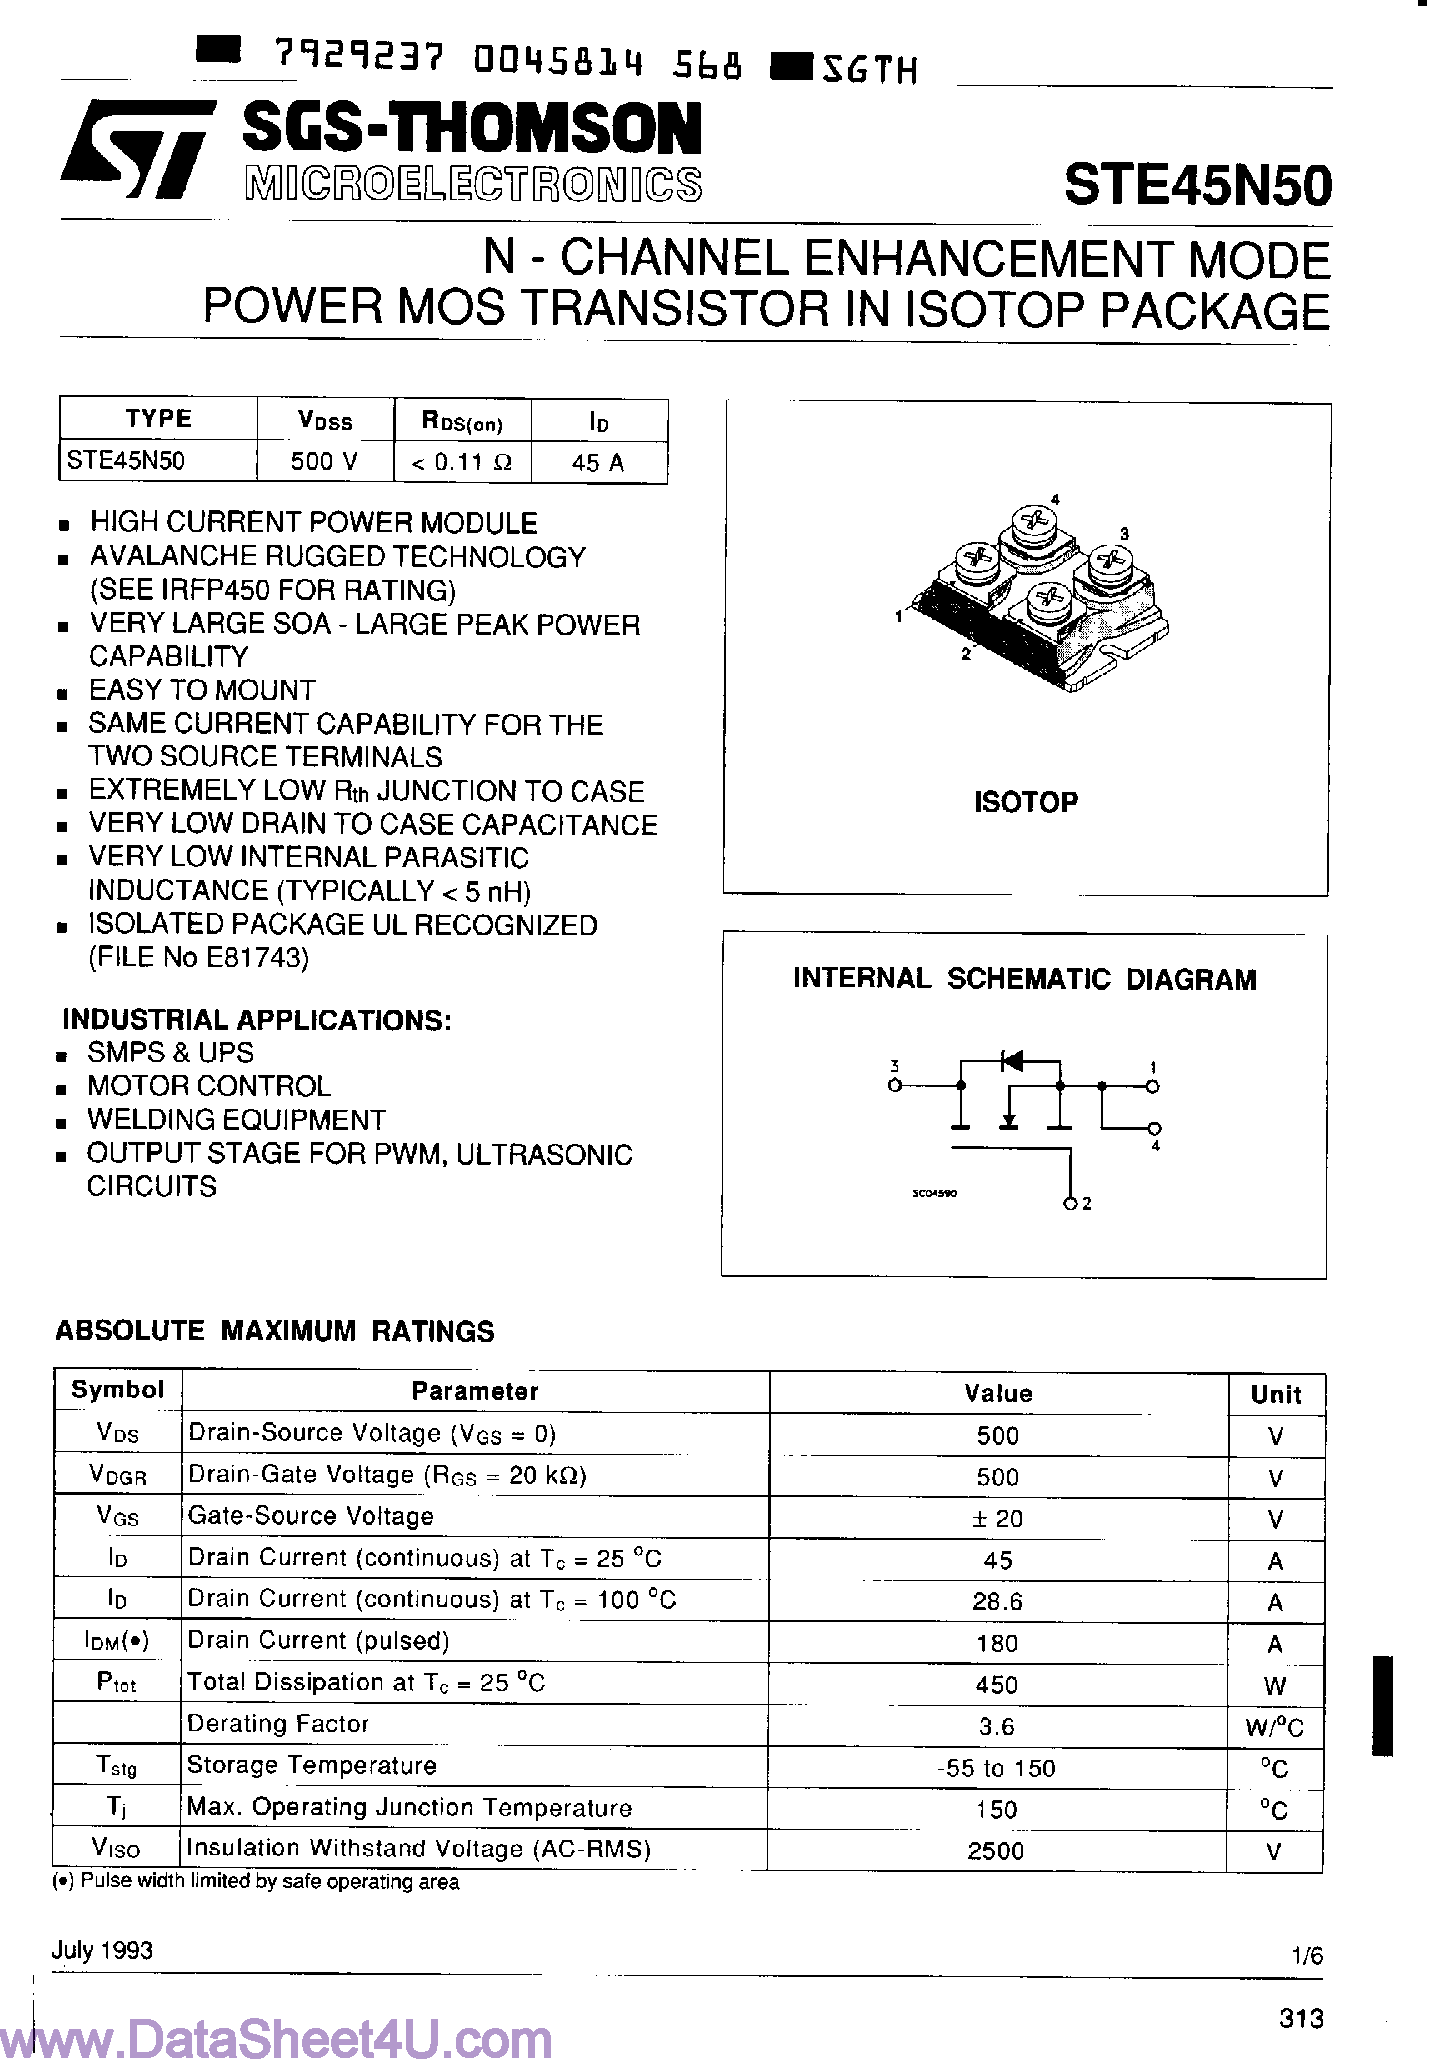 Даташит STE45N50 - N-Channel Enhancement Mode Power MOS Transistor страница 1